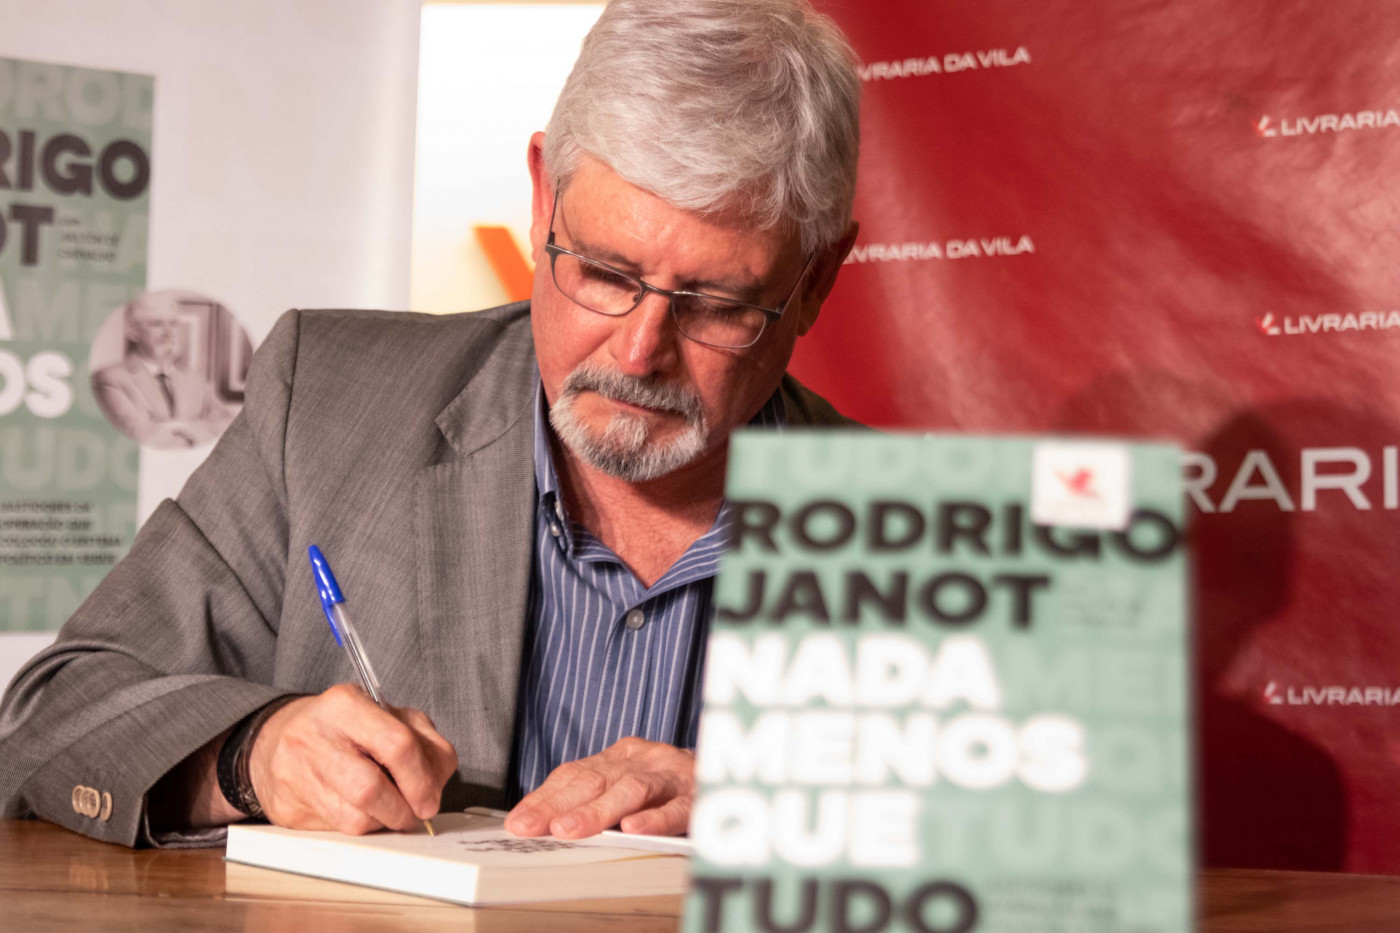 Rodrigo Janot lança livro em SP